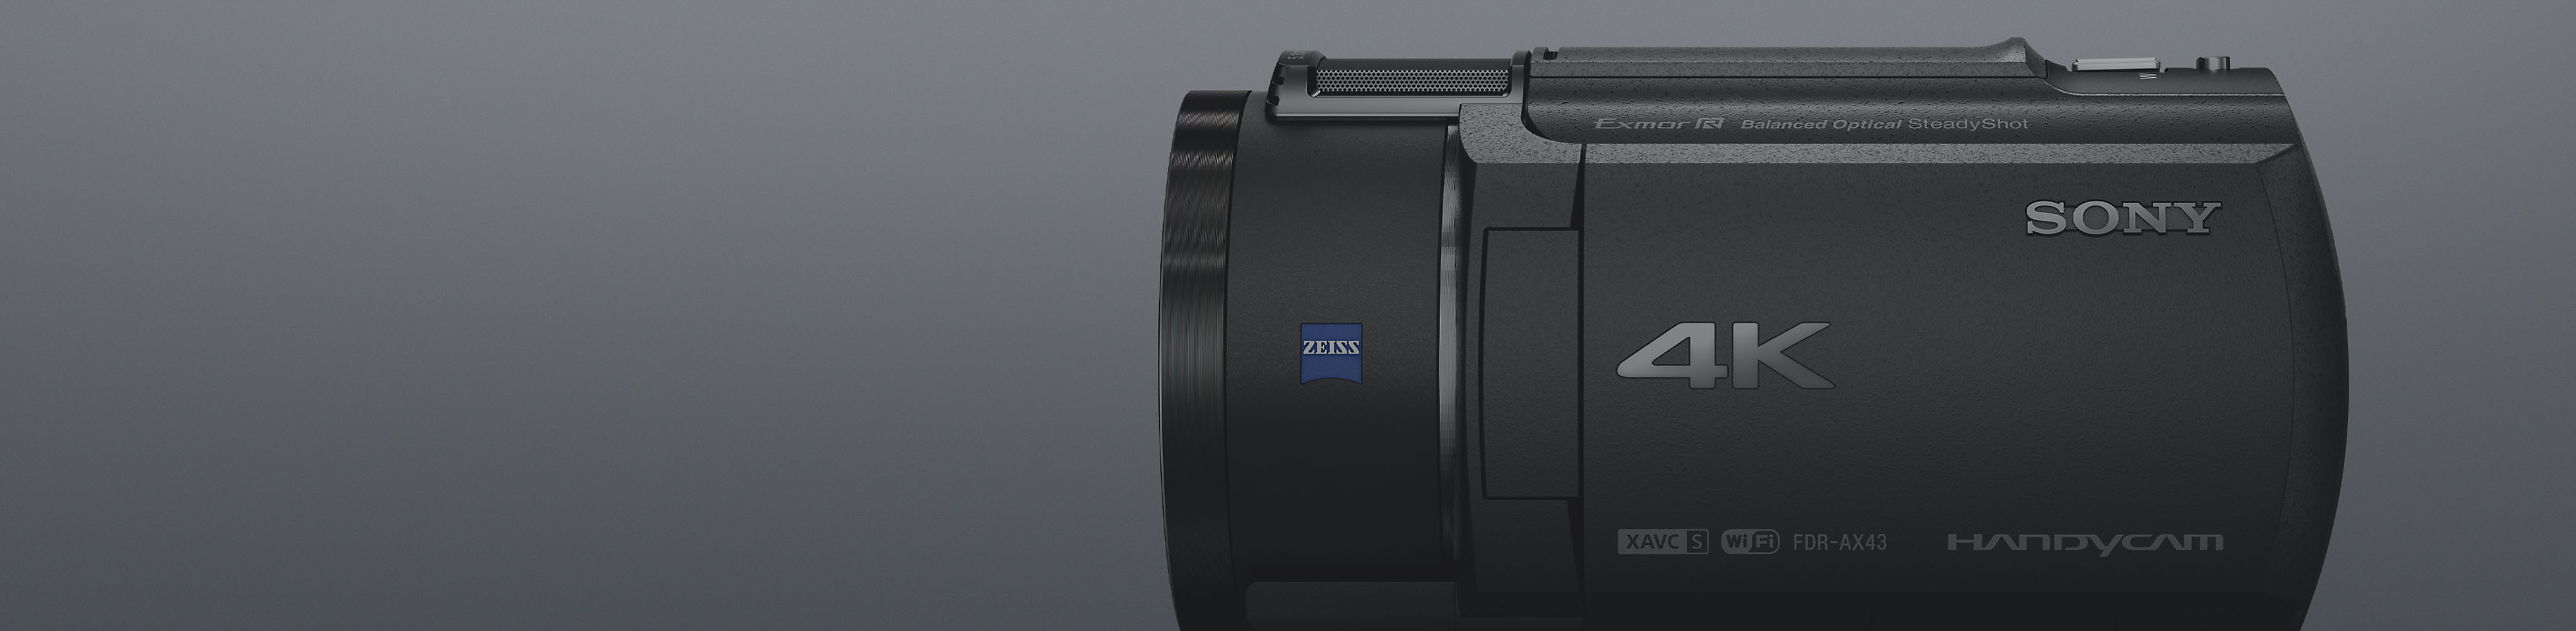 Zijaanzicht van een 4K Handycam-camcorder van Sony